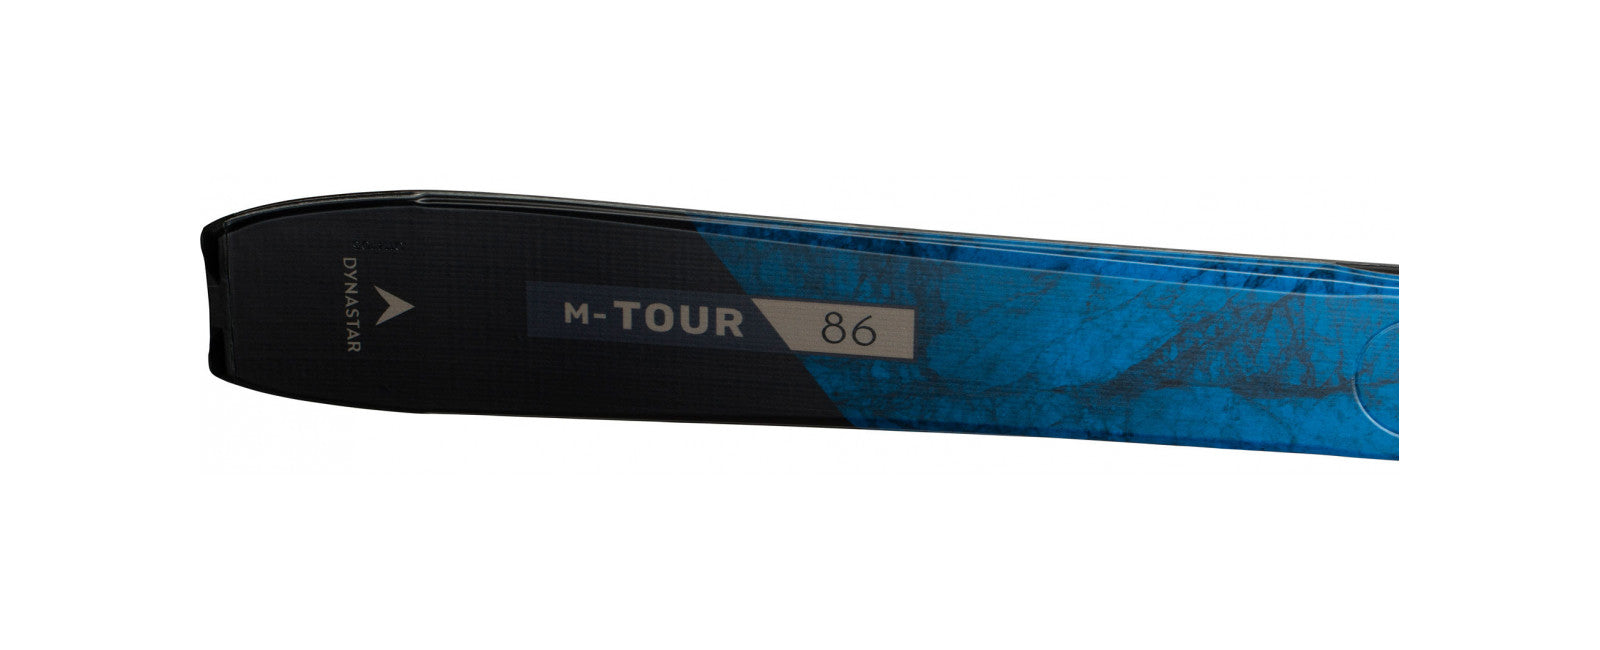 Dynastar M-Tour 86 Skis